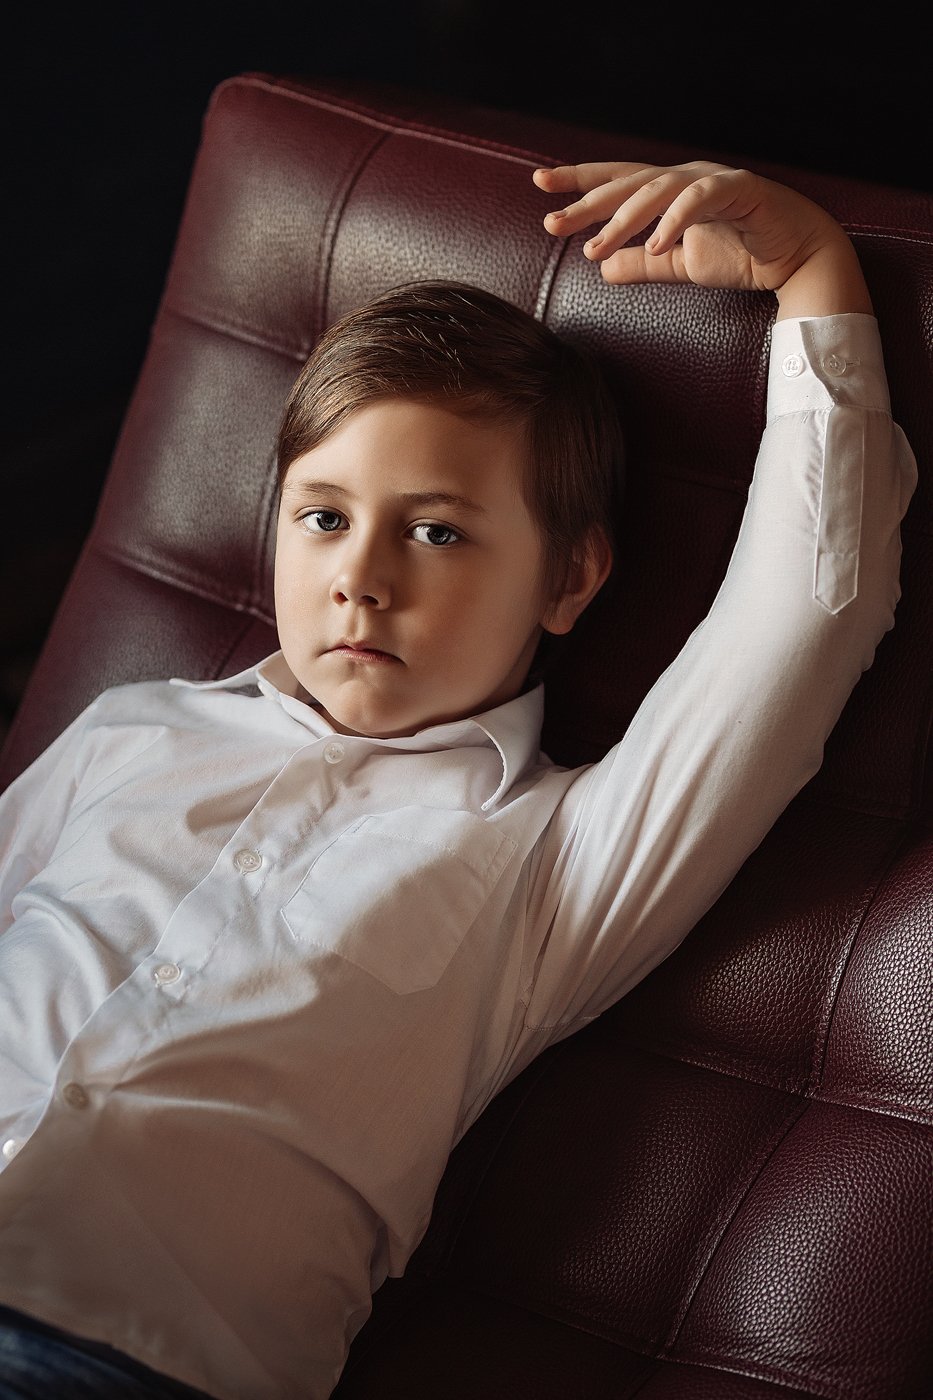 Мальчик, сын, парень, ребенок, коричневый, рубашка, кресло, портрет, рука, лицо, глаза, Ангелина Косова